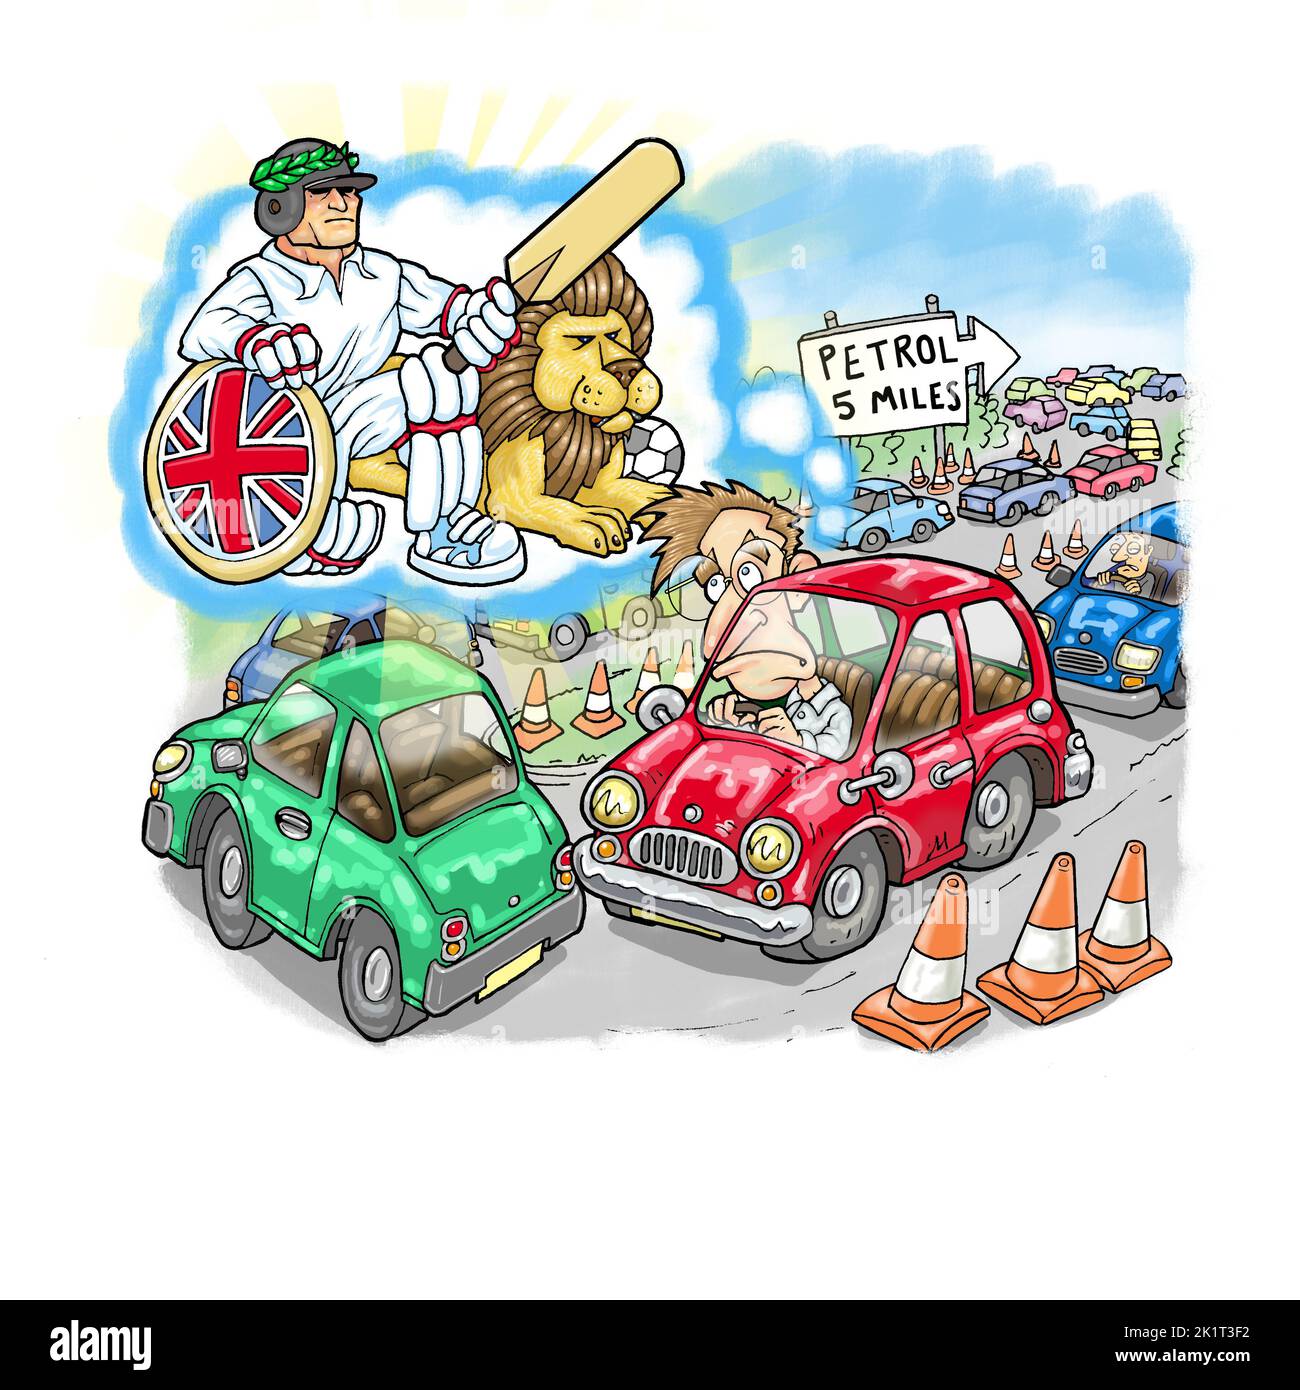 Caricature, homme coincé dans la file des embouteillages et des douanes rêvant de stéréotypes anglais sur le cricket, le Britannia et les lions par rapport aux réalités de l'après-Brexit Banque D'Images